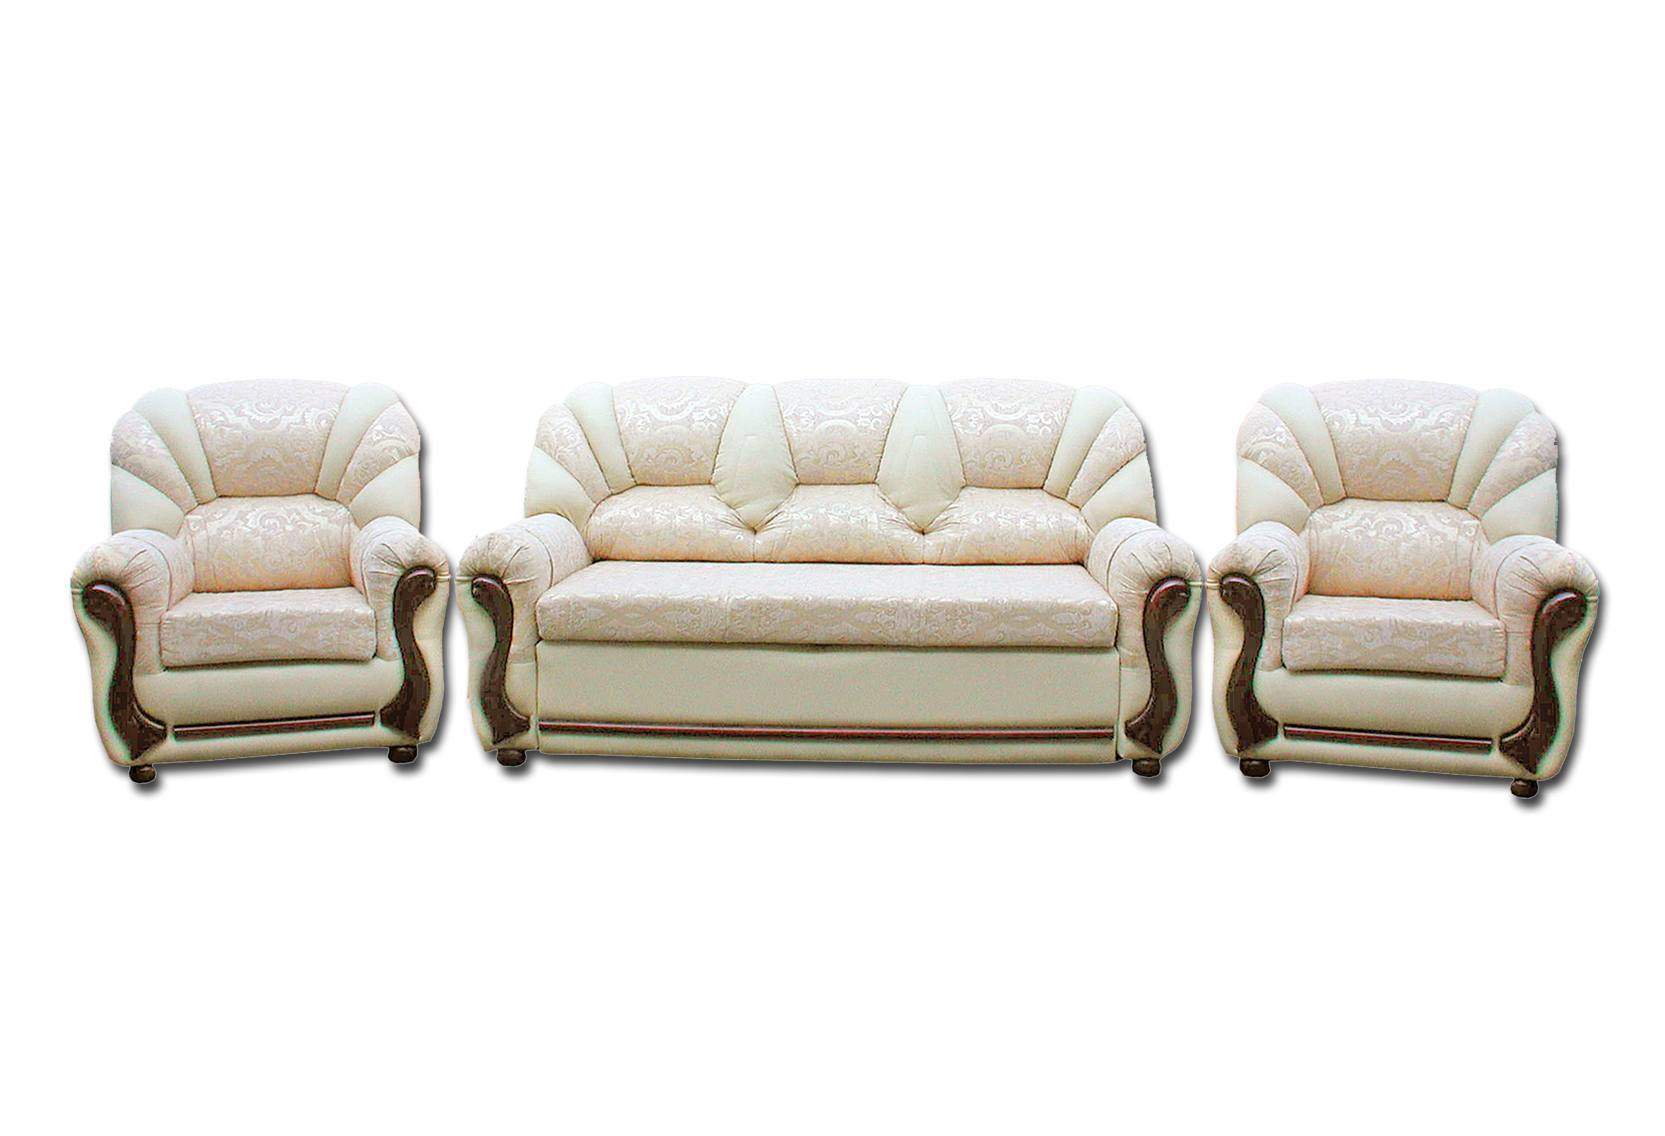 Мебель диваны кресла недорого. Комплект мягкой мебели (диван и кресло) модель «Форест». Шатура мебель диван и 2 кресла Лучано. Комплект мягкой мебели атташе.